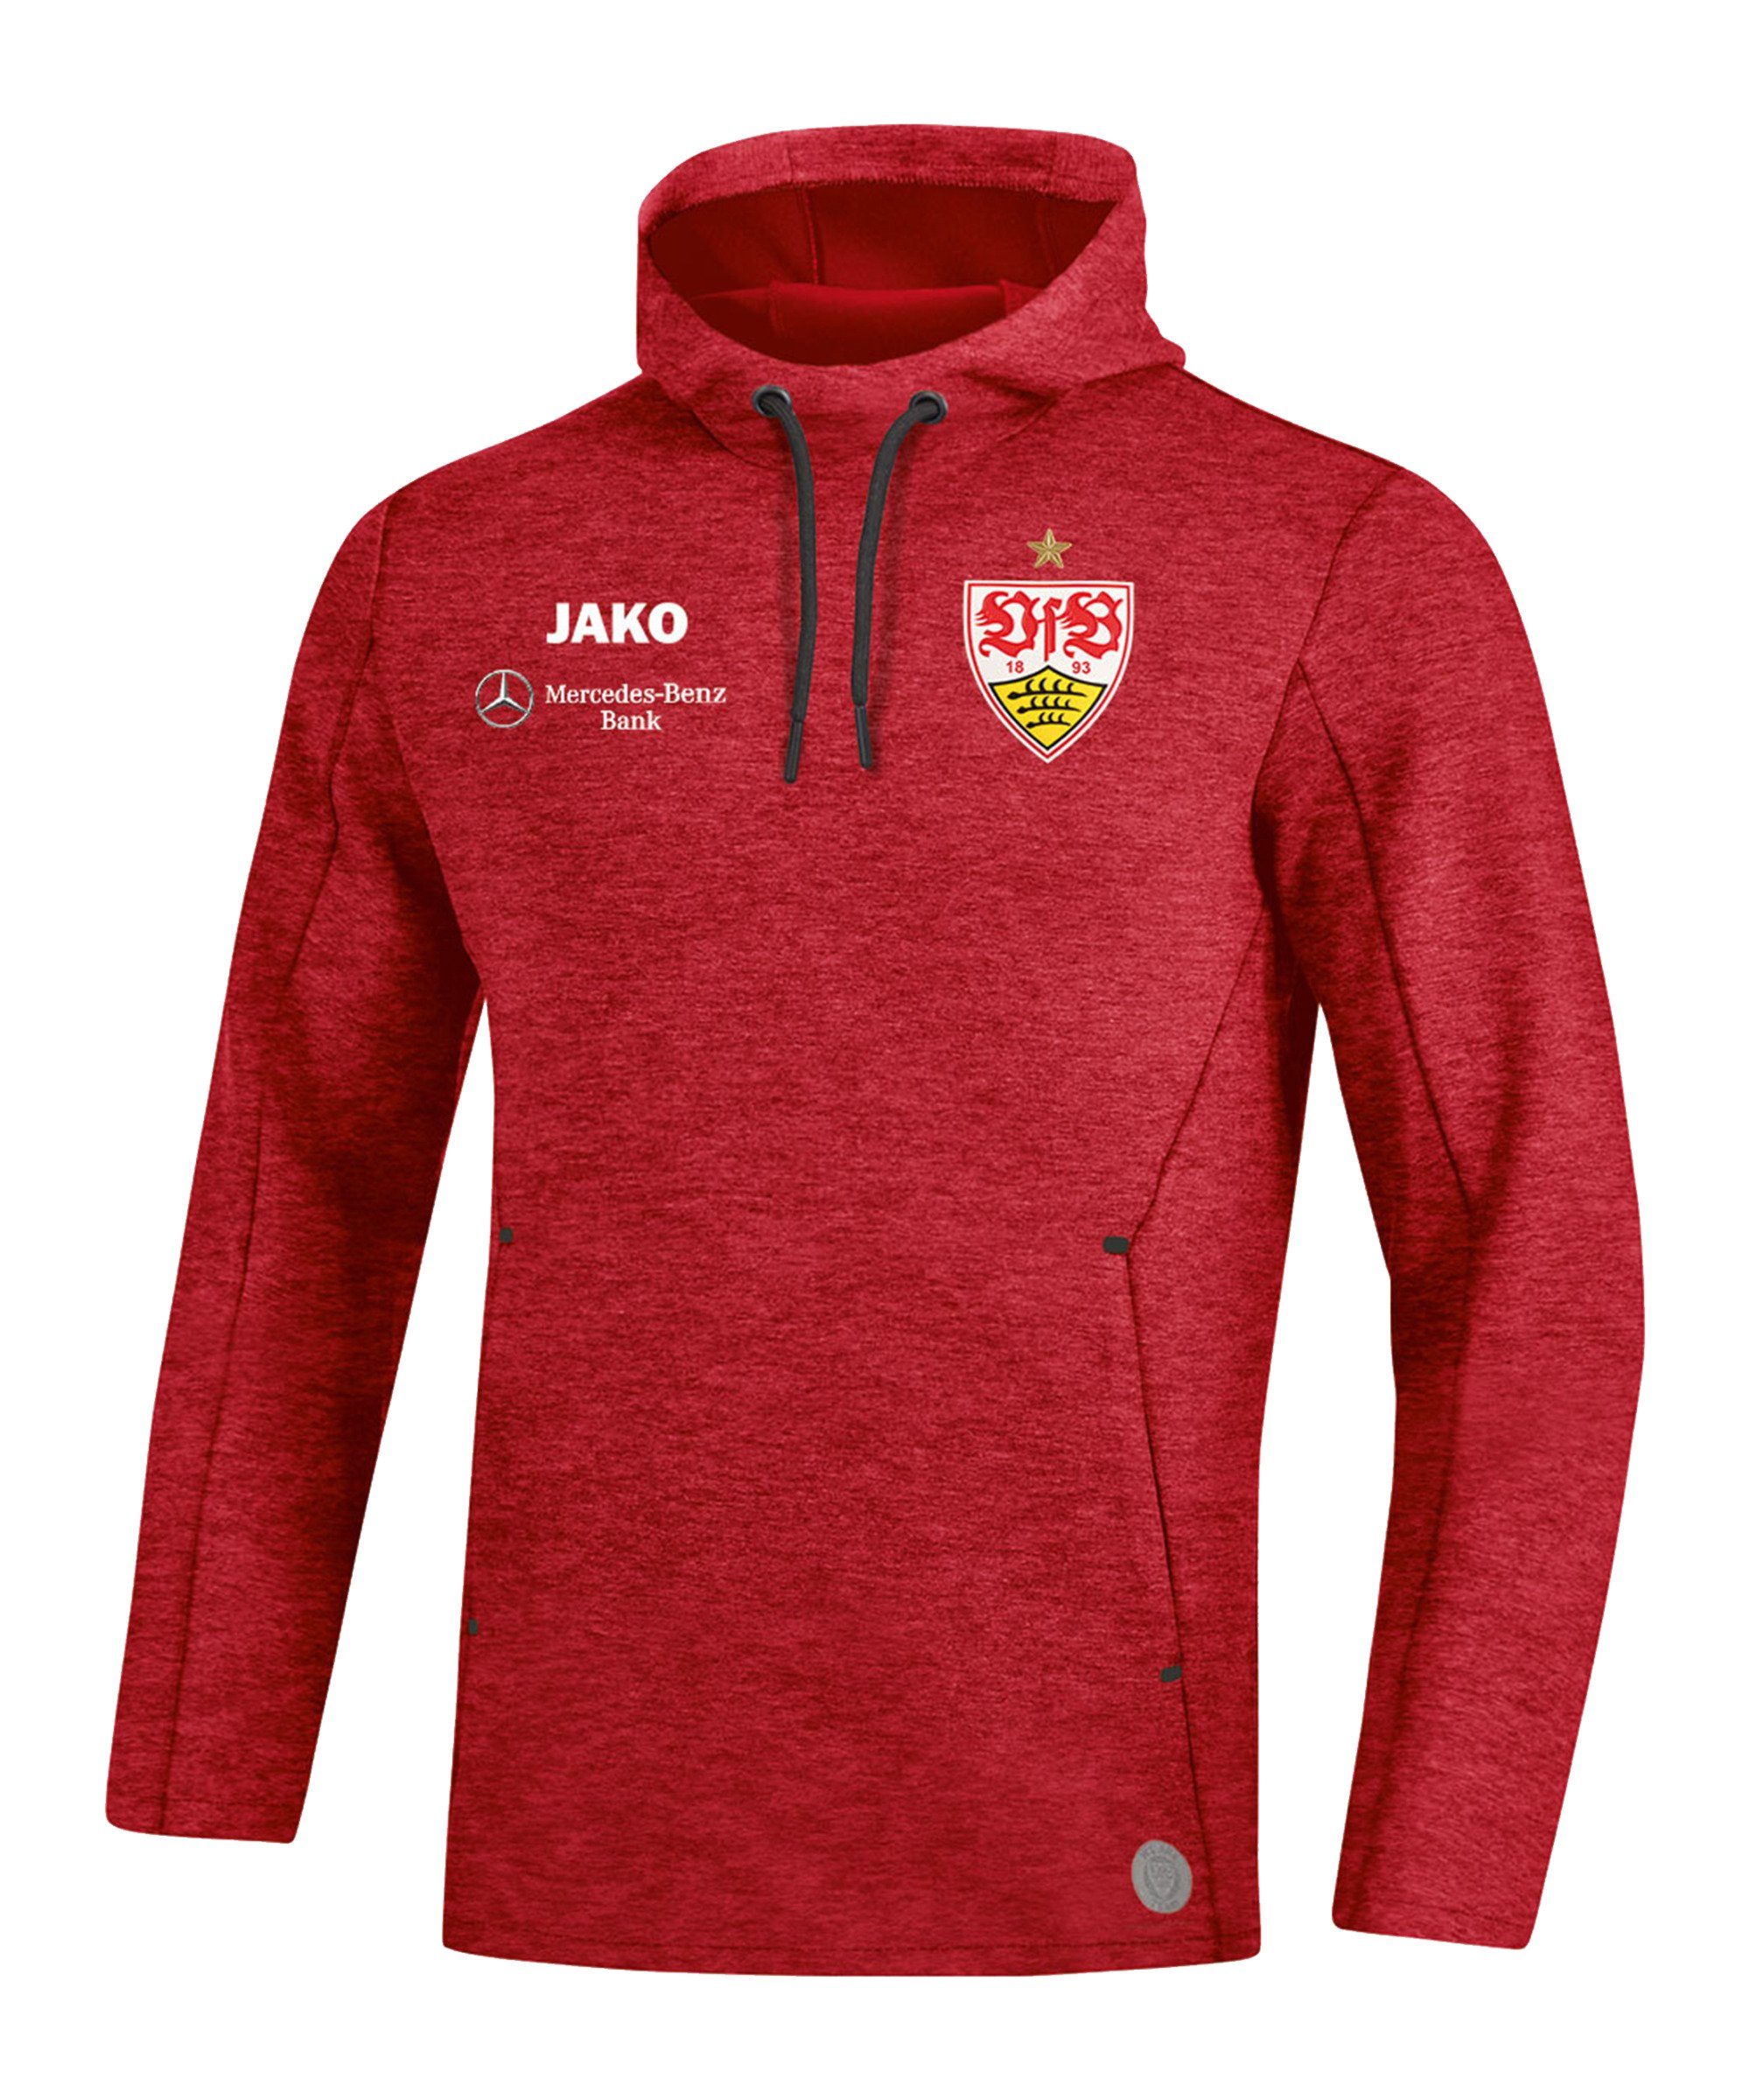 Jako Sweatshirt »VfB Stuttgart Premium Hoody« | OTTO